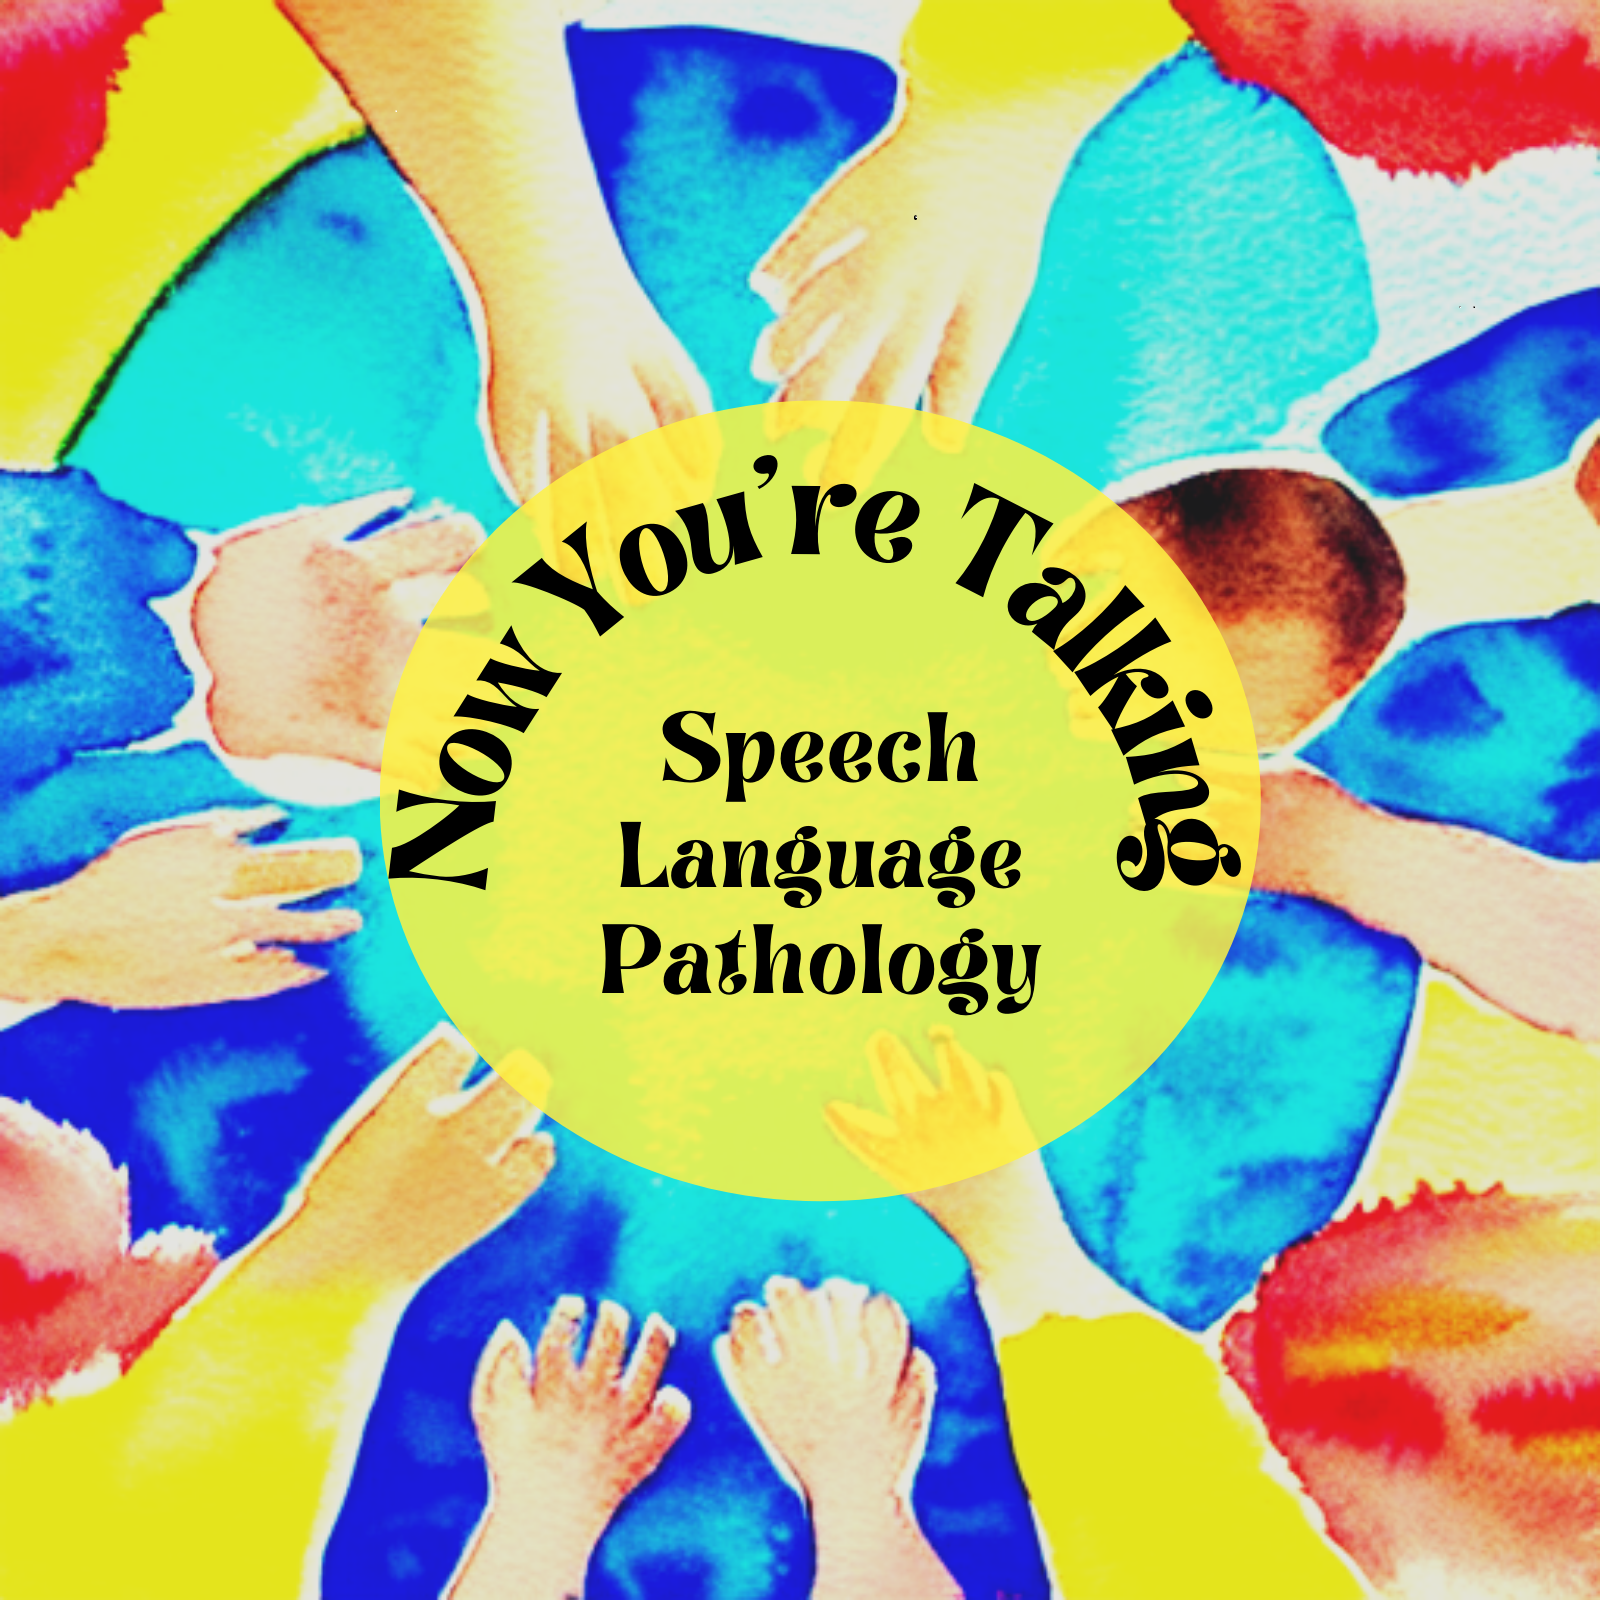 Now You're Talking Speech-Language Pathology